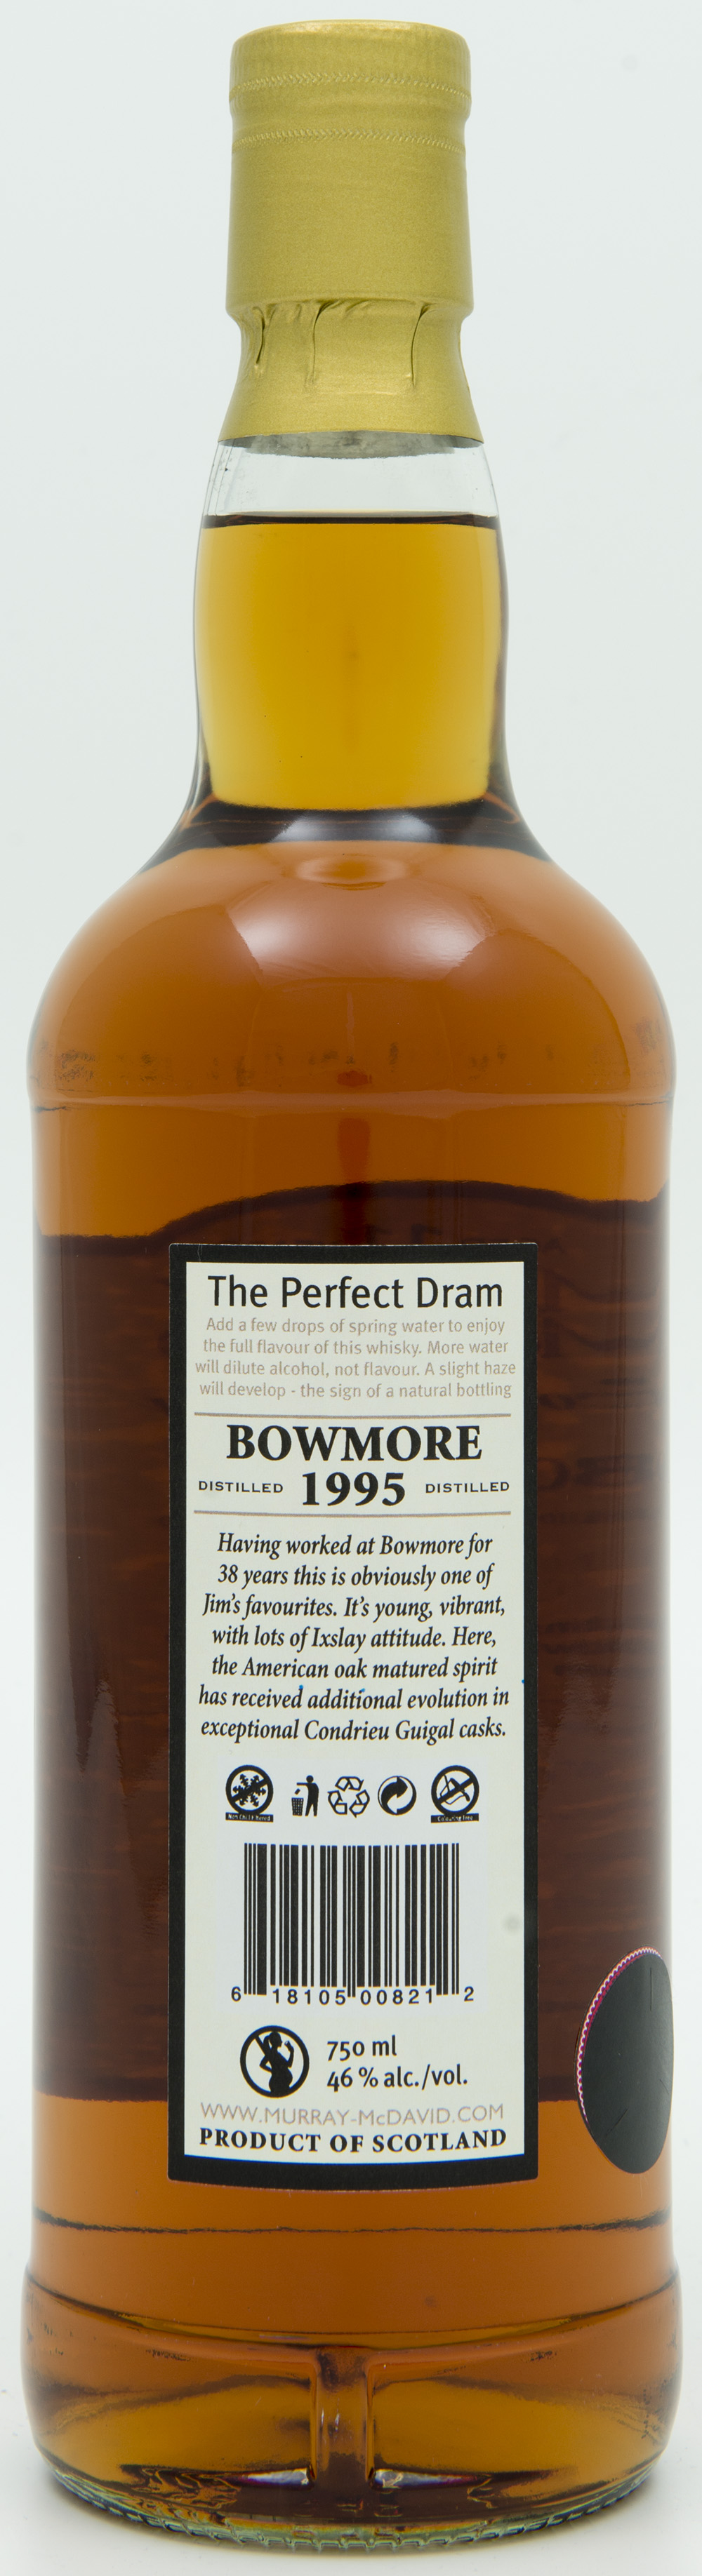 Billede: DSC_6570 Murray McDavid Bowmore 11 years 1995 - bottle back.jpg